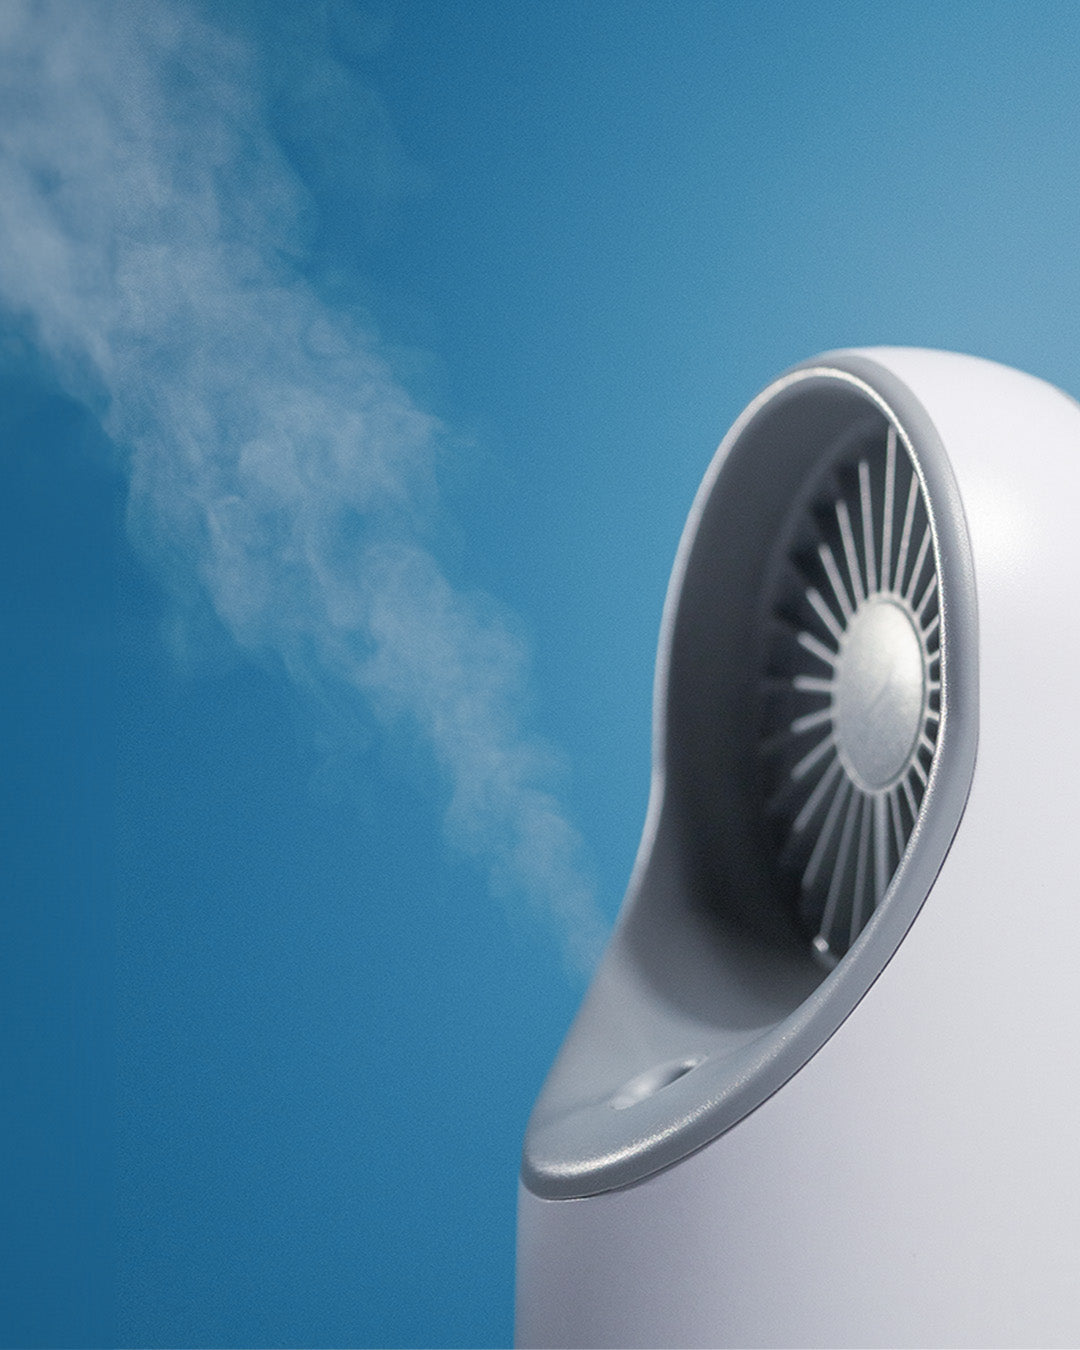 White mini fan humidifier